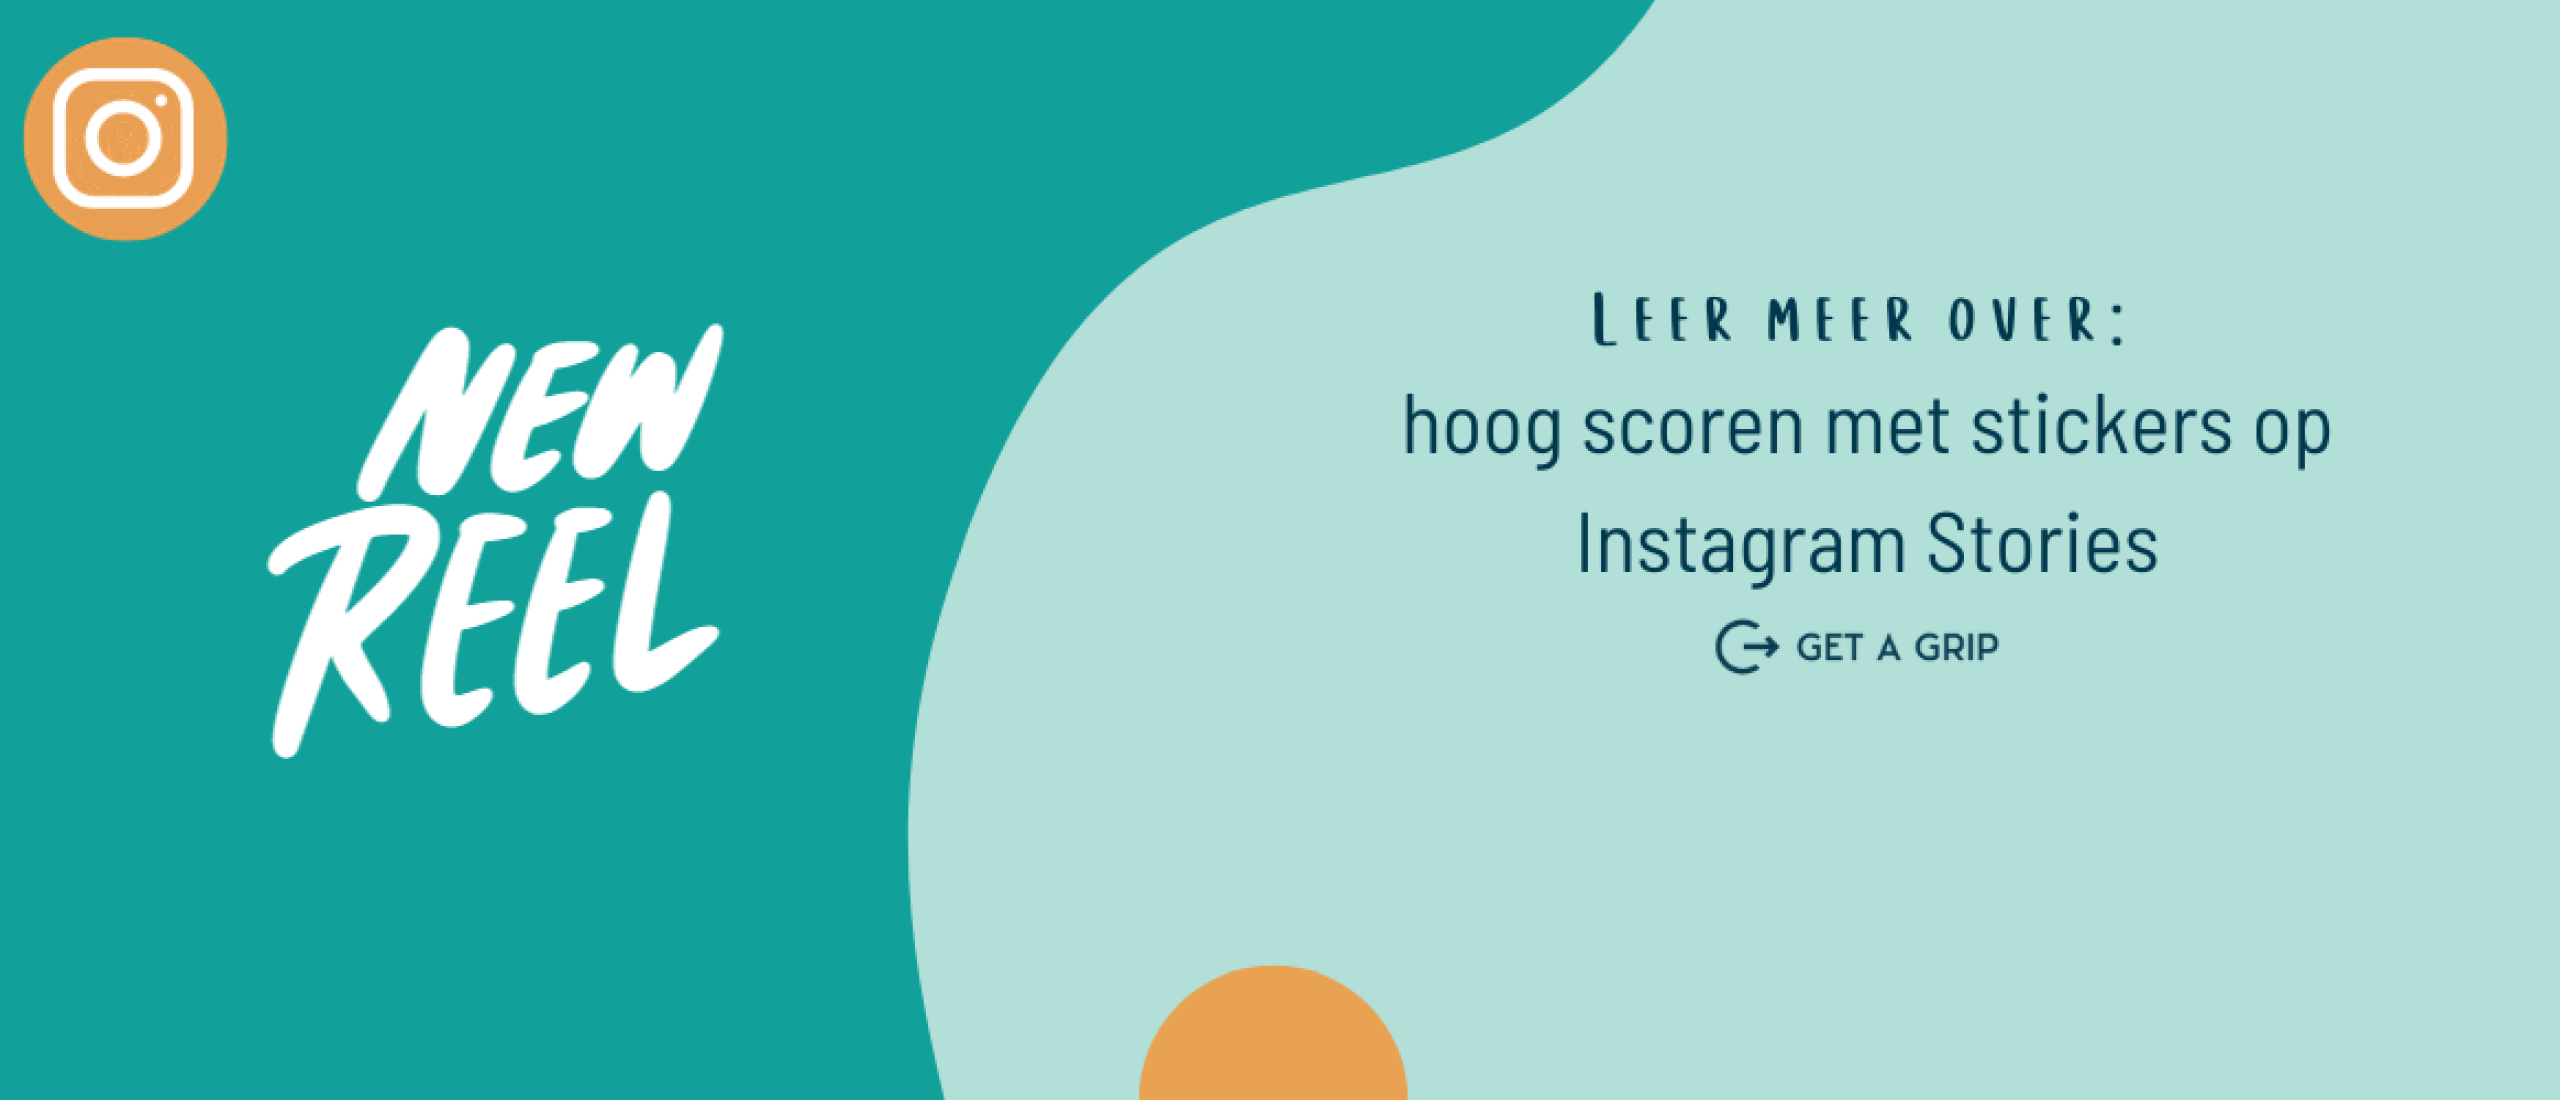 hoog scoren met stickers op Instagram Stories